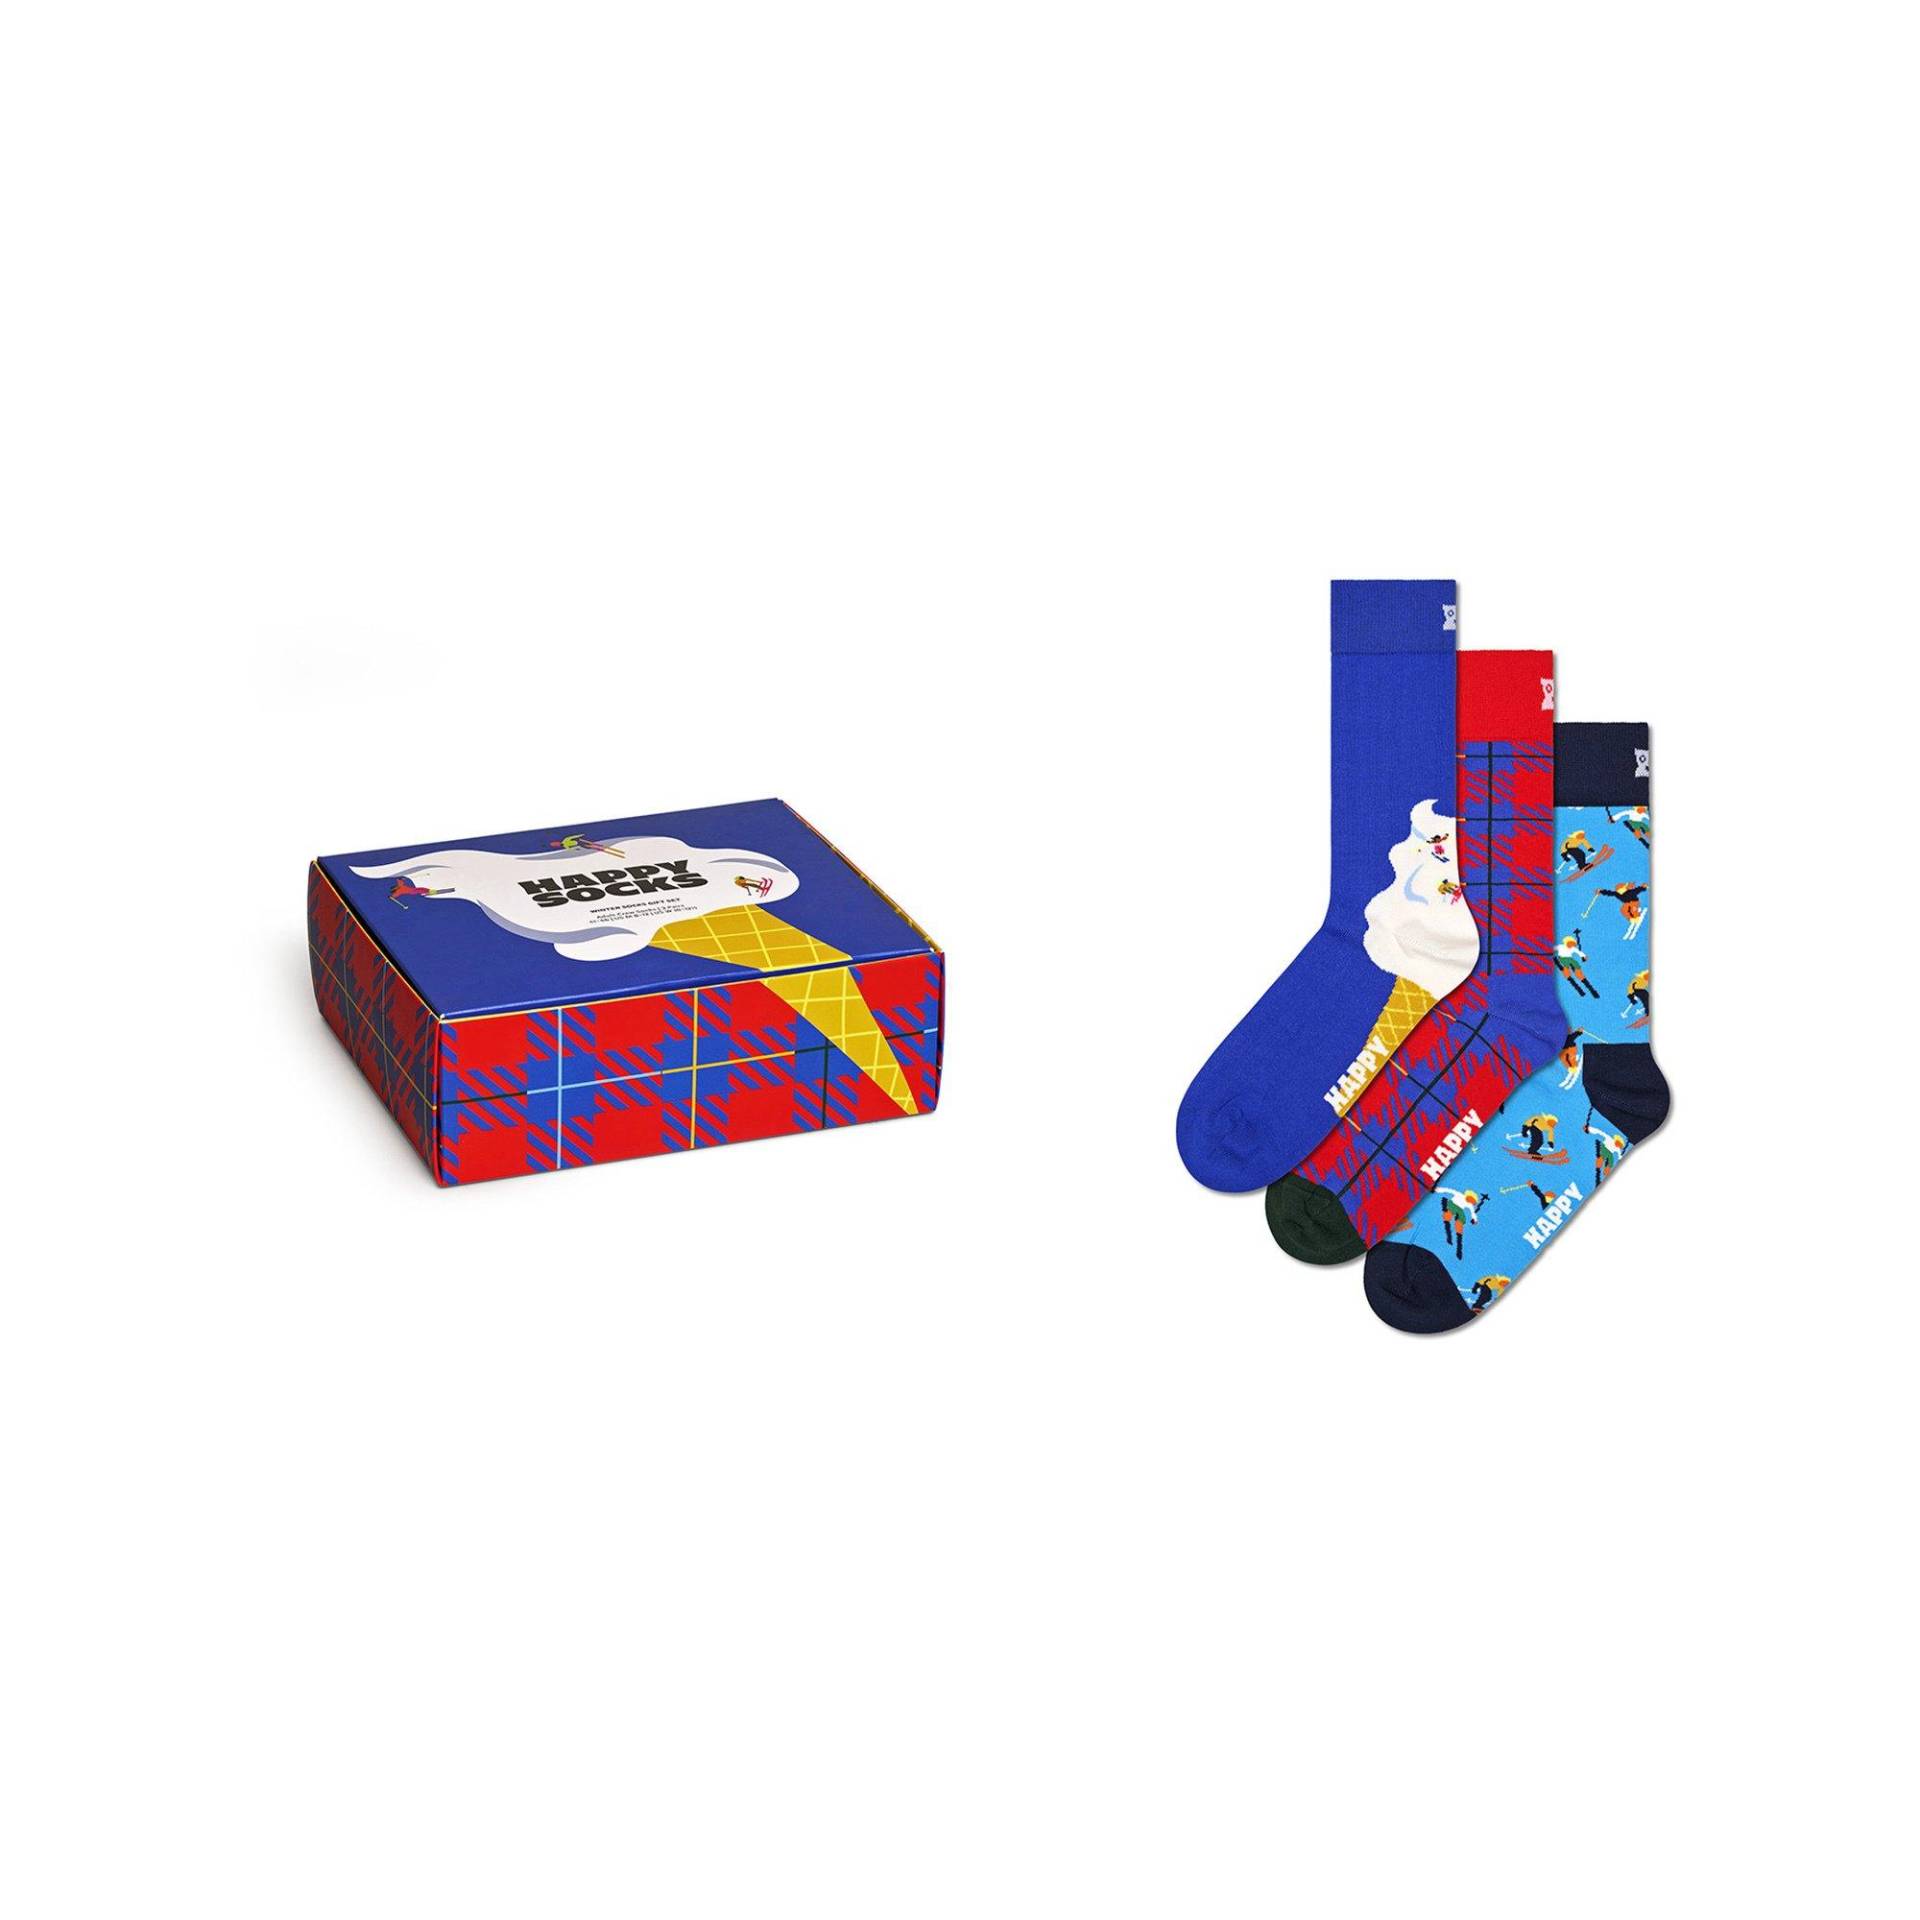 Multipack, Socken Herren Multicolor 41/46 von Happy Socks